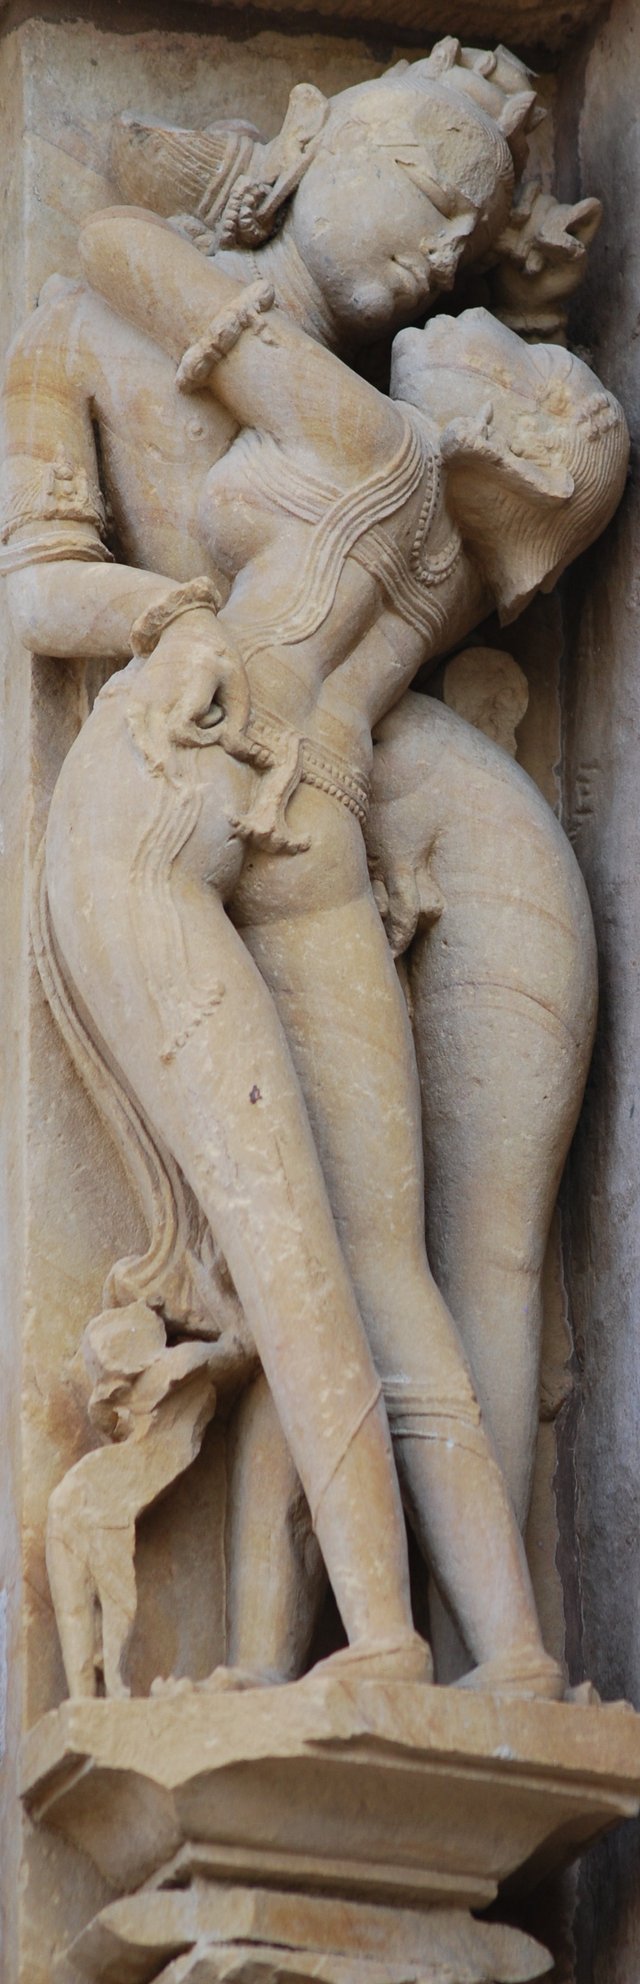 Kamabandha (erotic sculpture) at Khajuraho temple according to Kamakala Tattva in Silpasastra, a Tantra text.